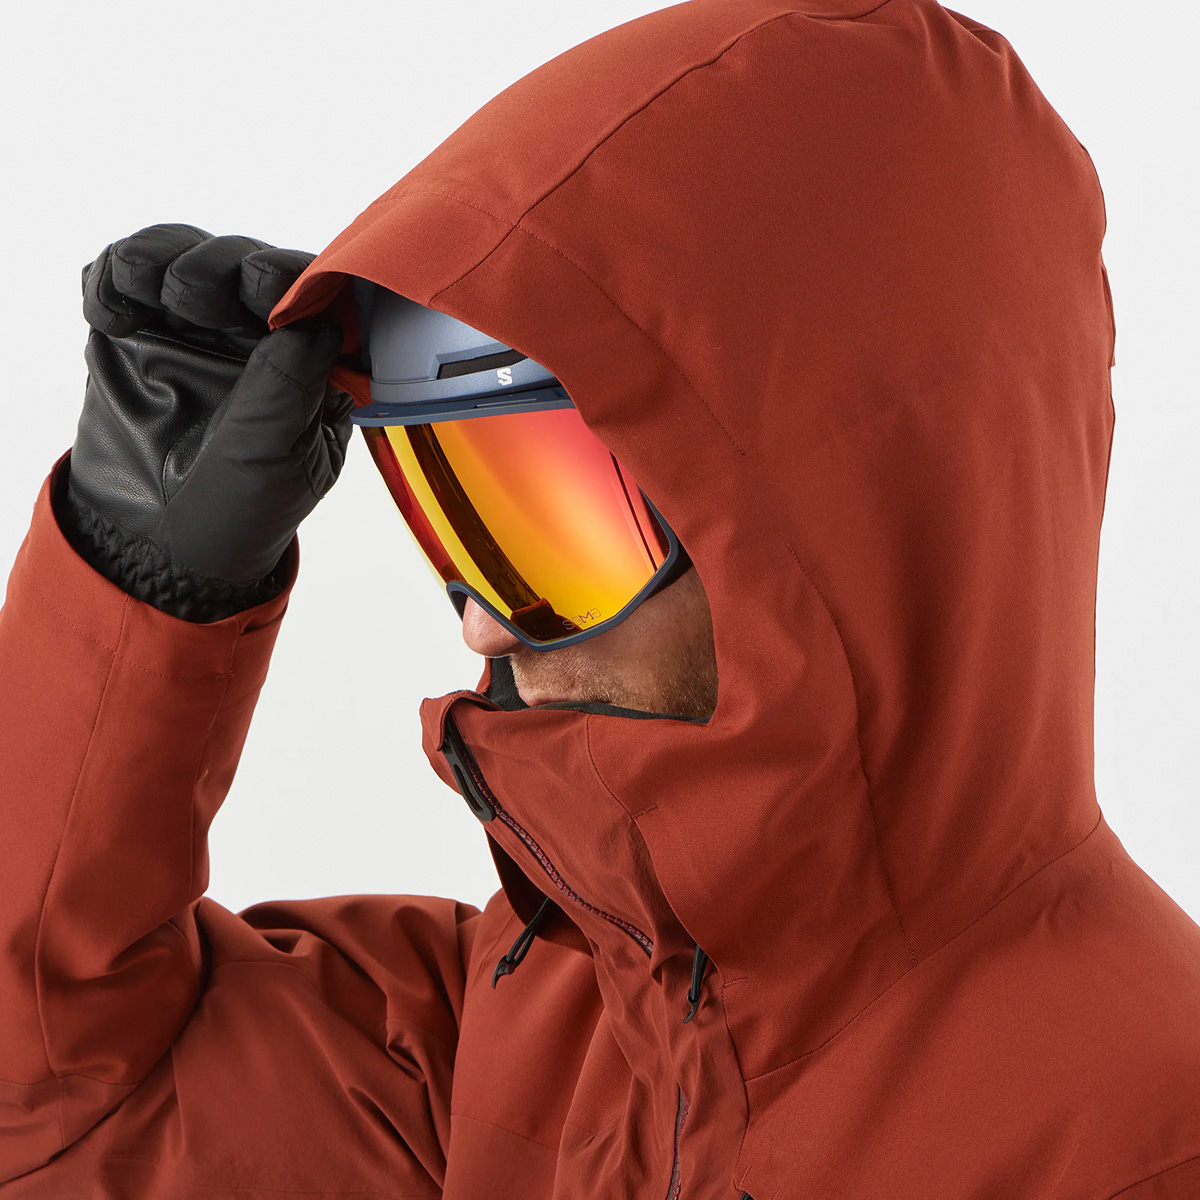 Куртка лыжная UNTRACKED JKT M